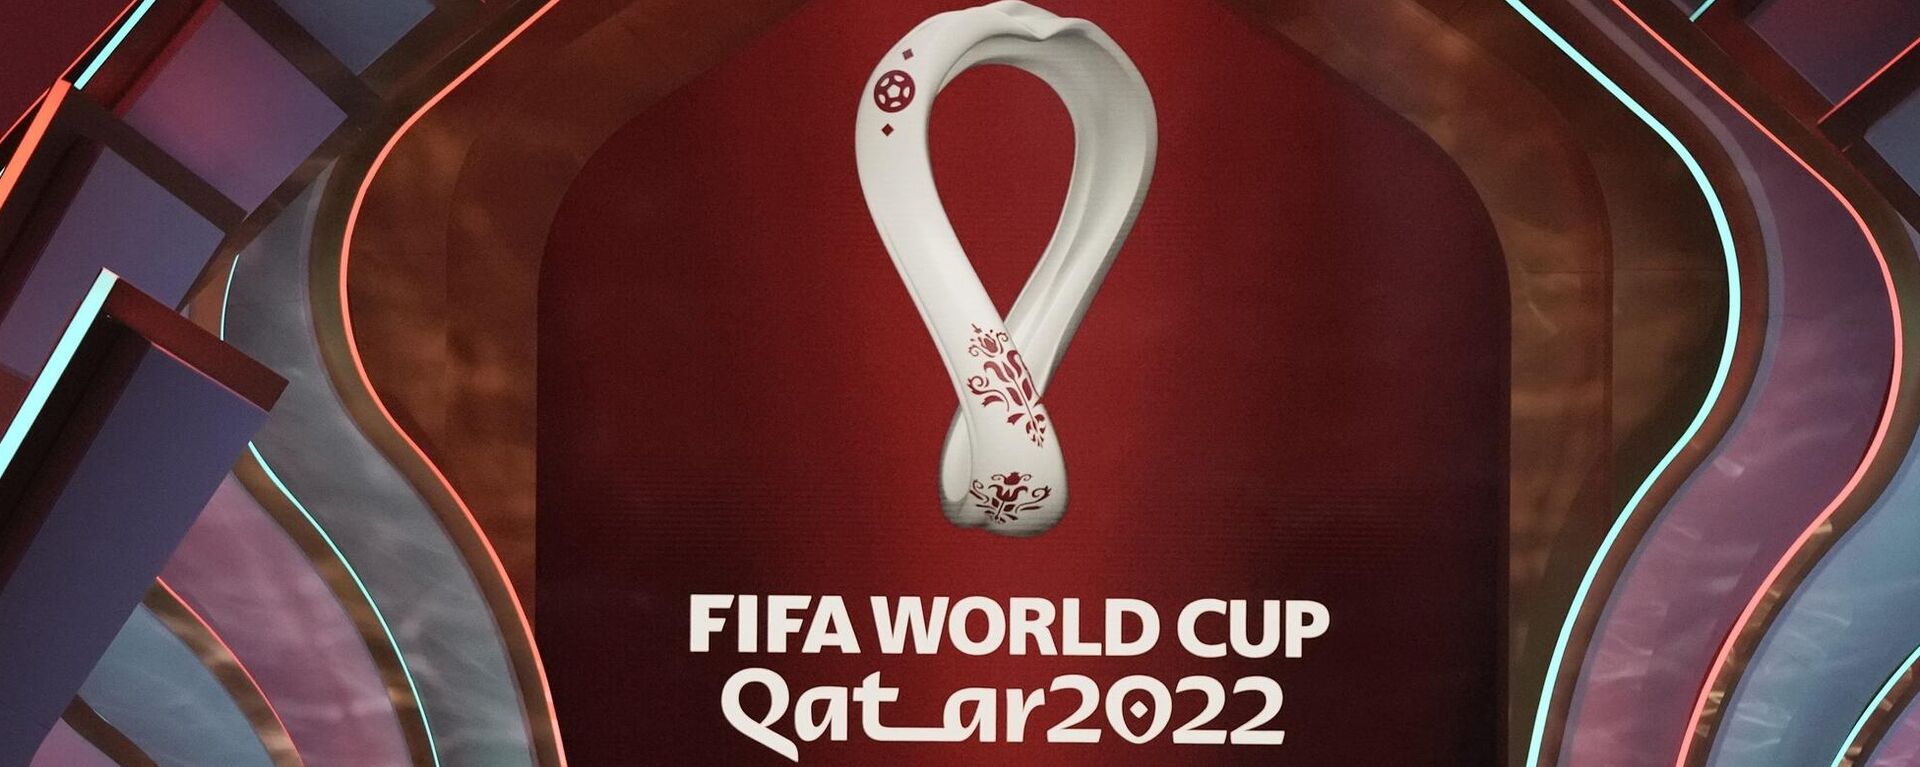 El logo de la Copa del Mundo de fútbol 2022 en Catar - Sputnik Mundo, 1920, 26.11.2022